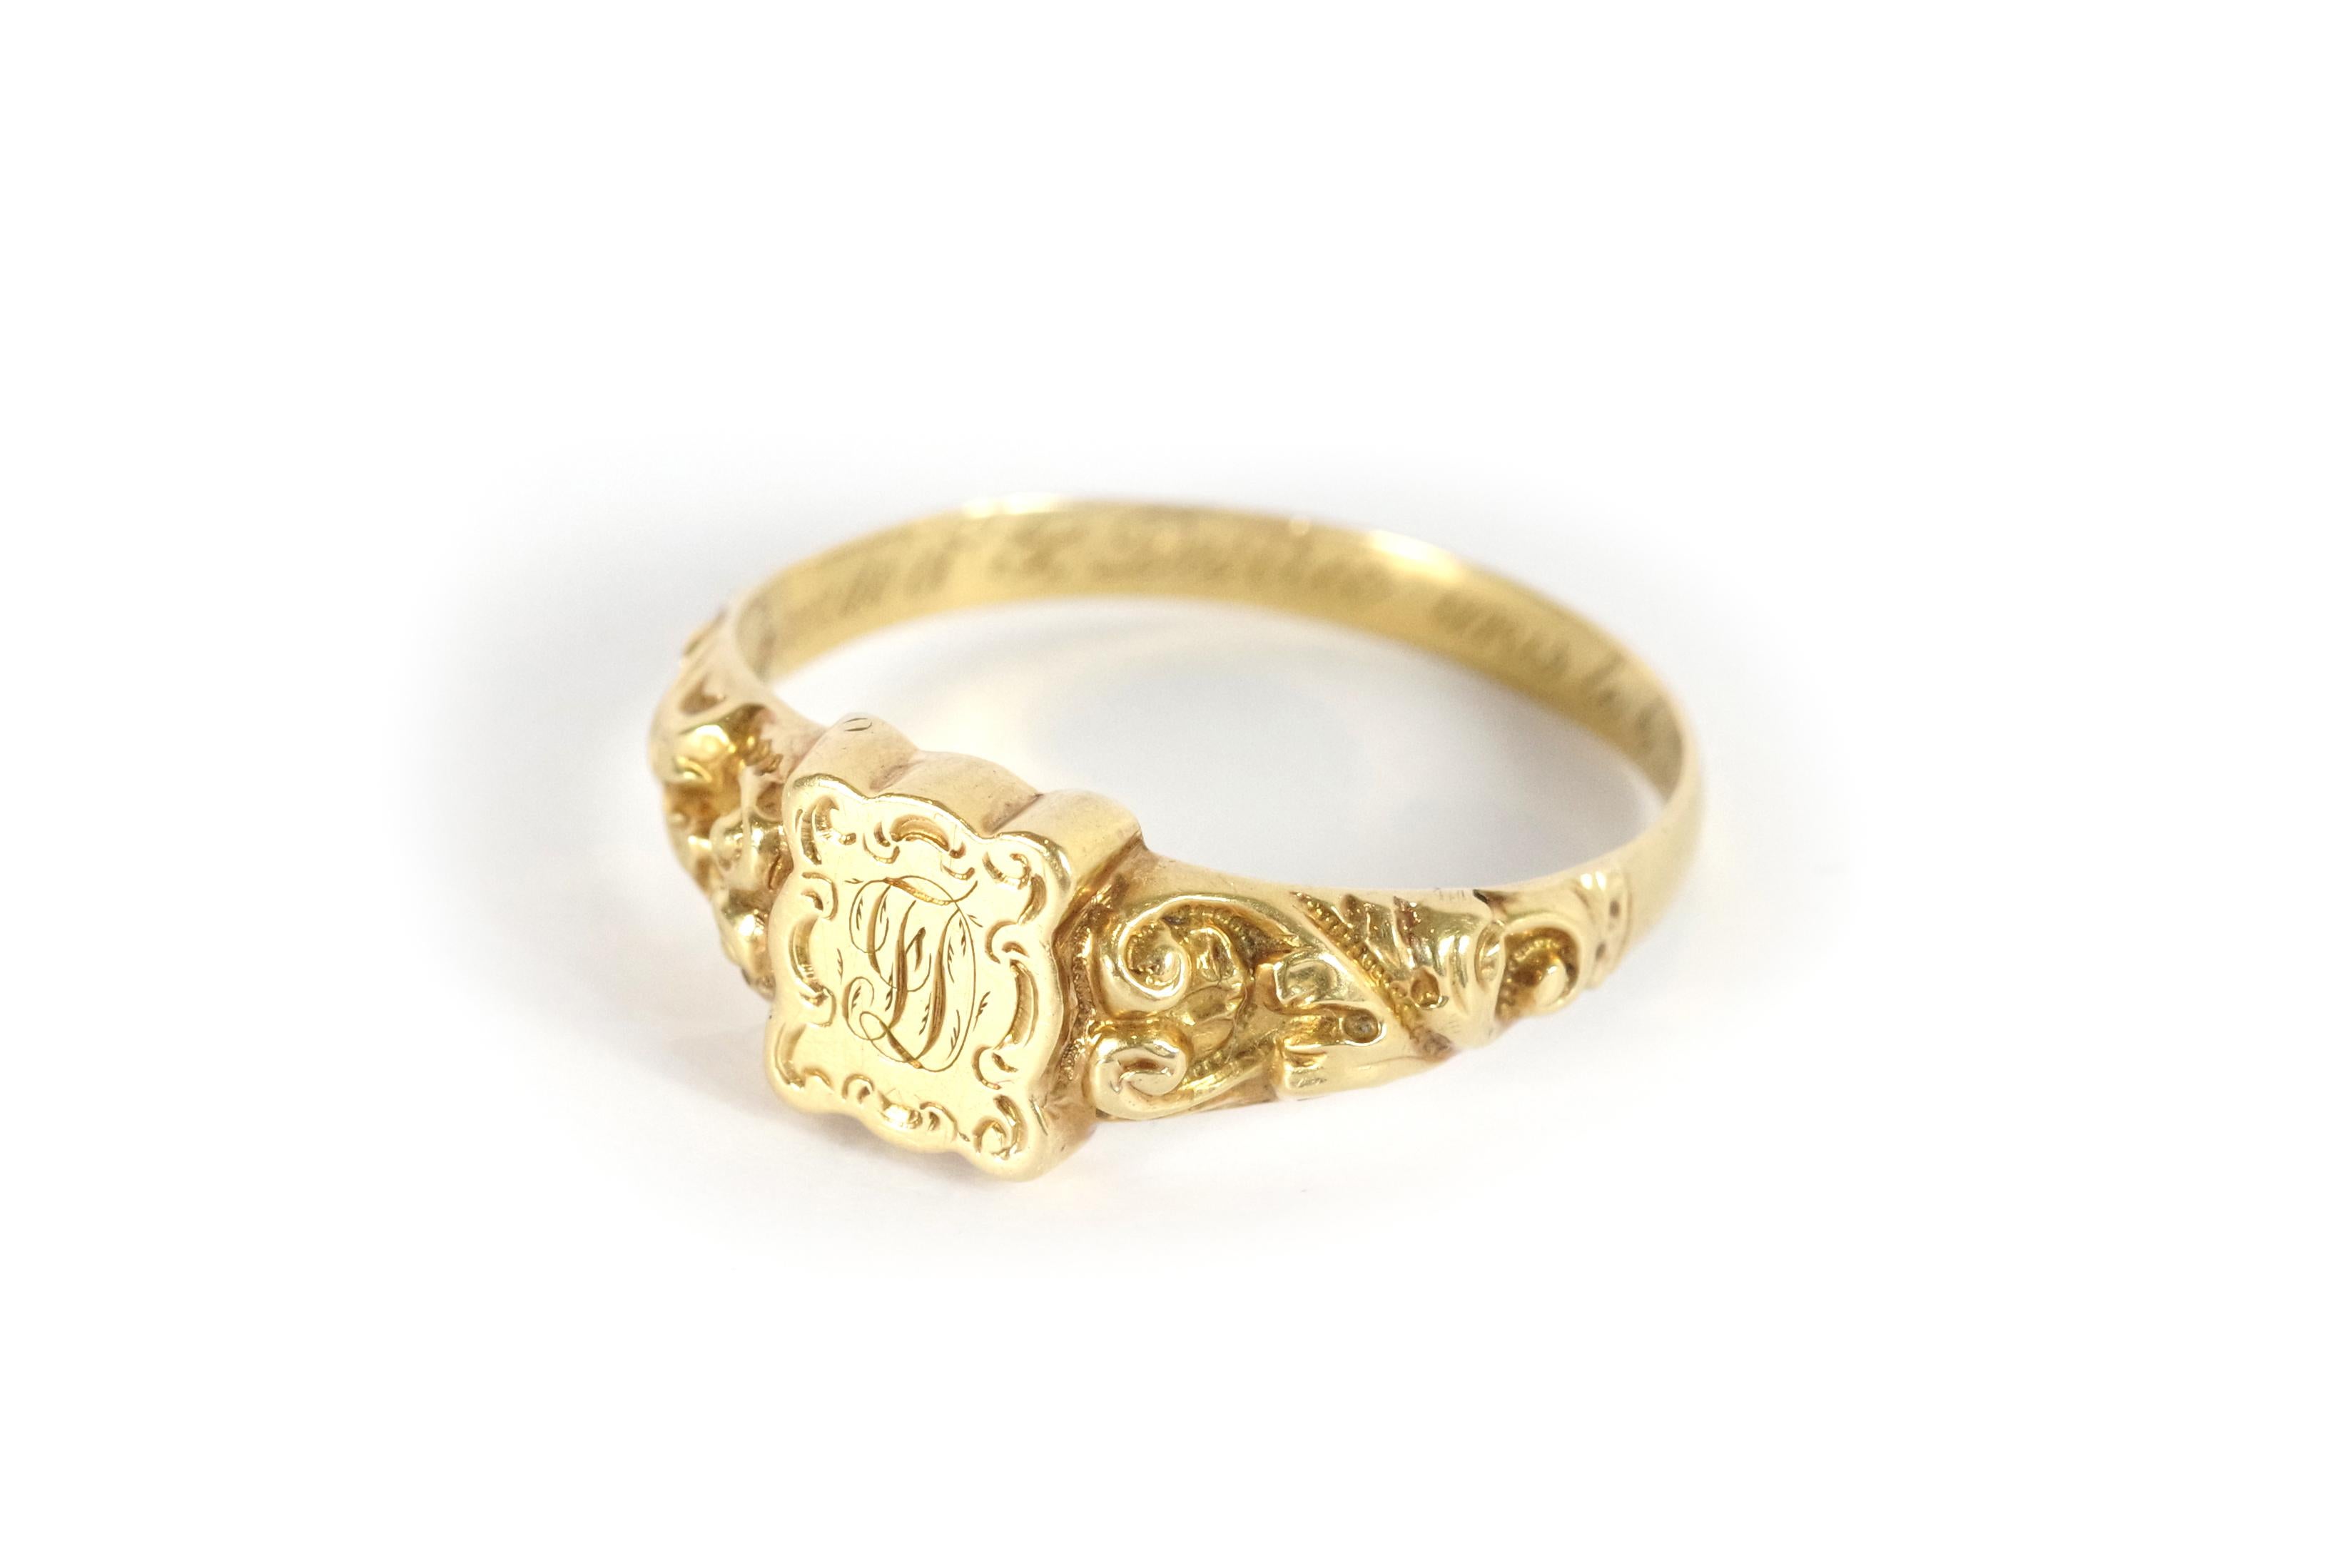 Antique secret signet ring in 18 karat rose gold. Antique wedding ring monogrammed 